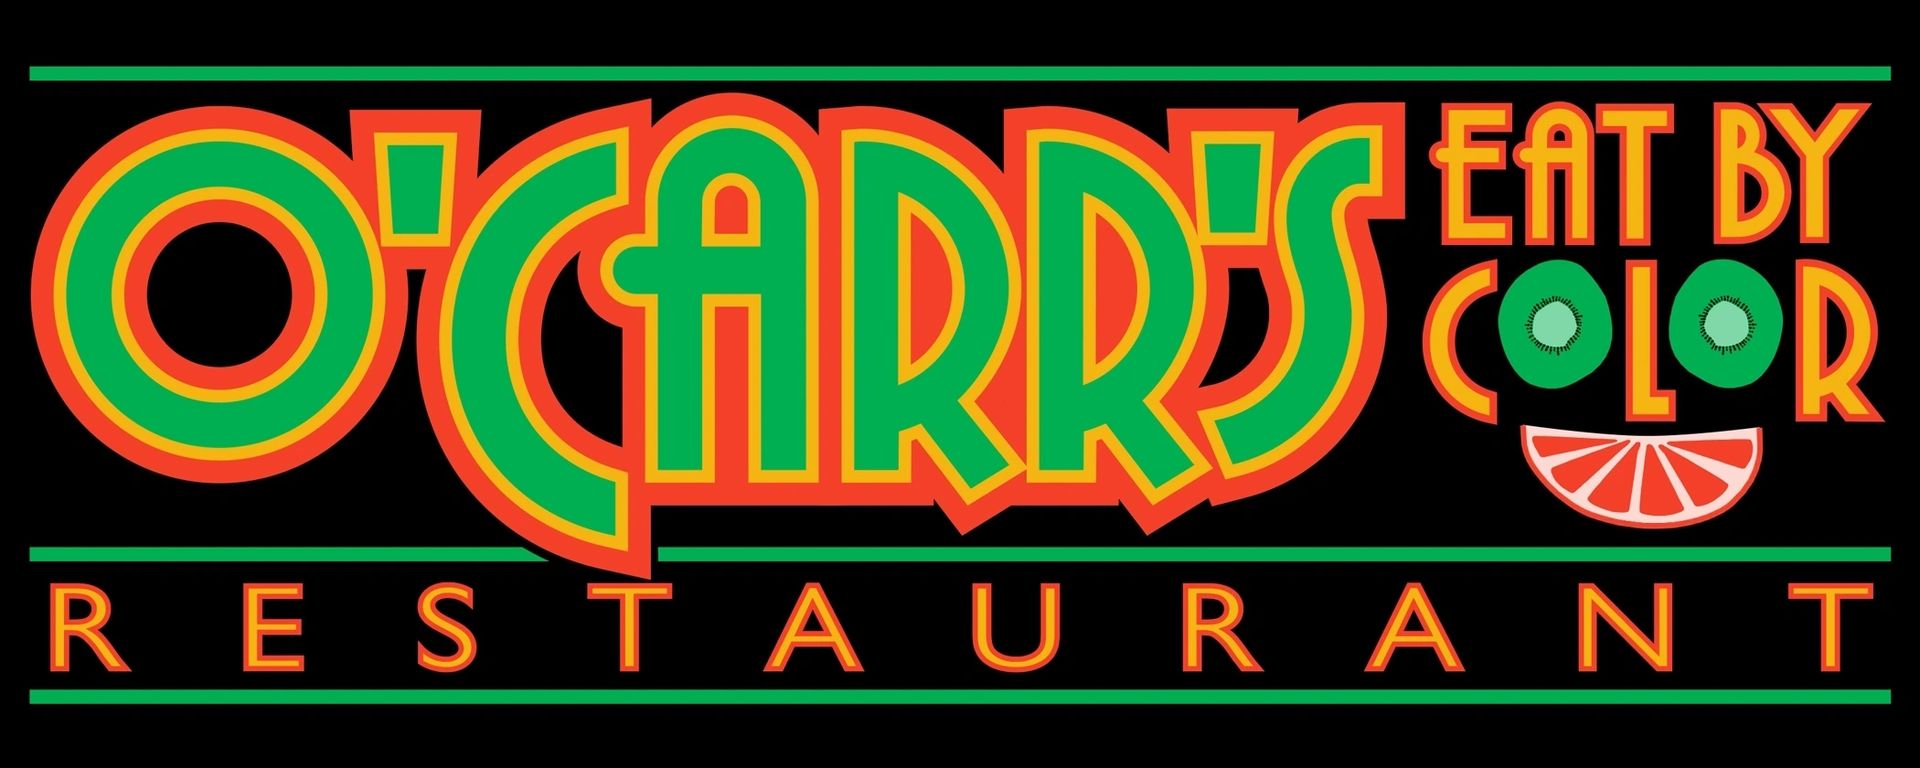 Ocarrs Restaurant logo